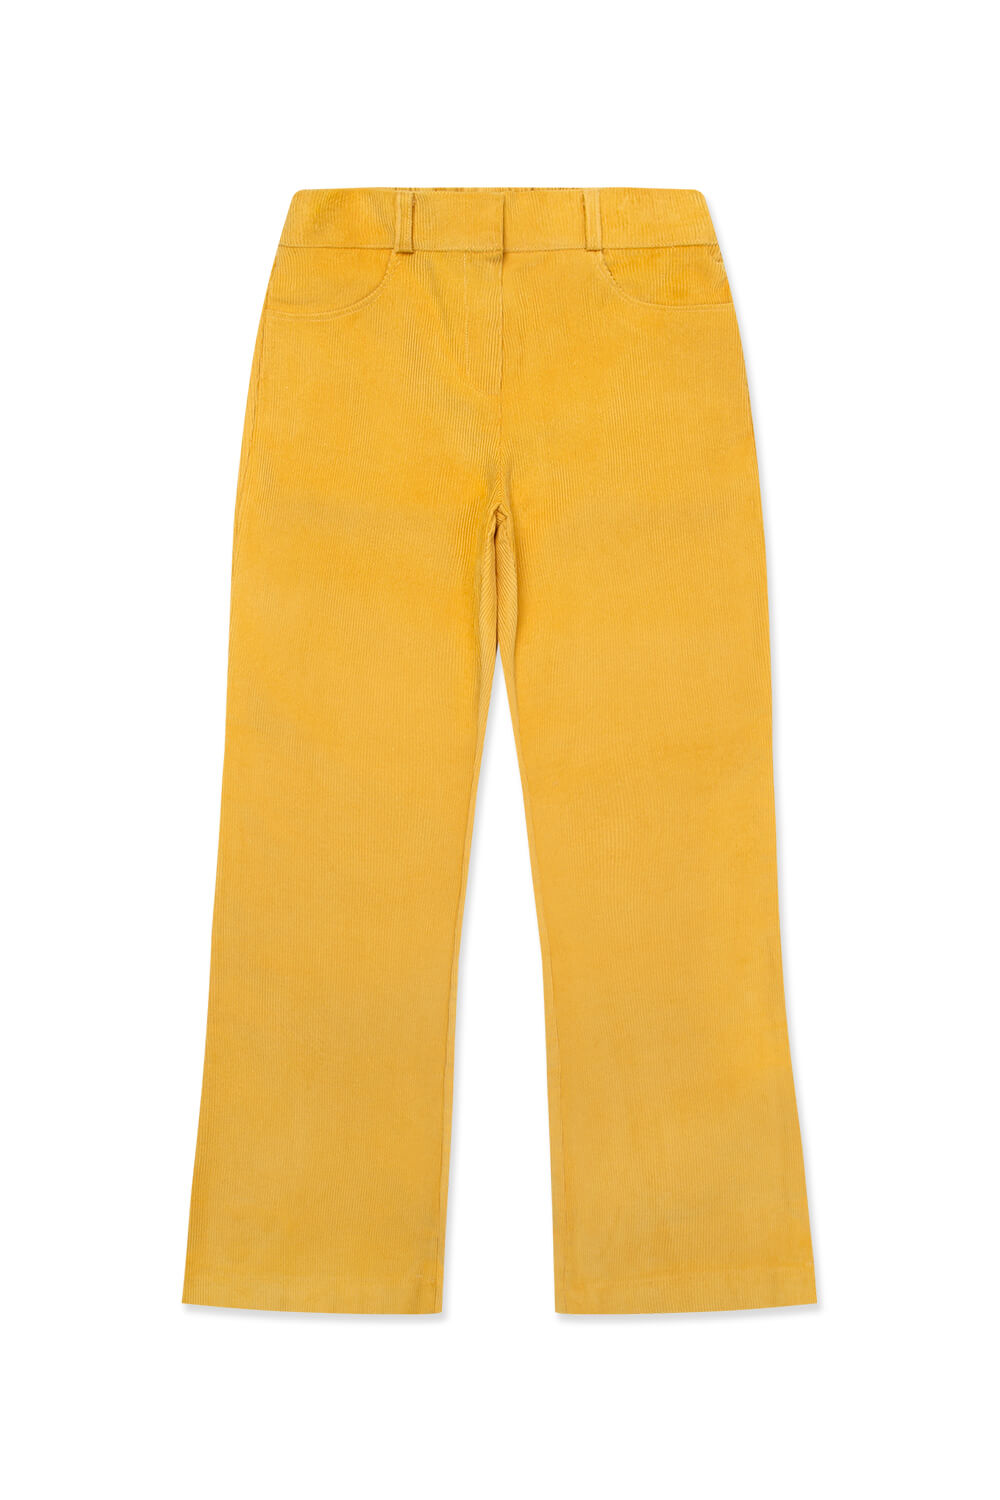 (WOMEN) Bagatelle Corduroy Pants_Yellow